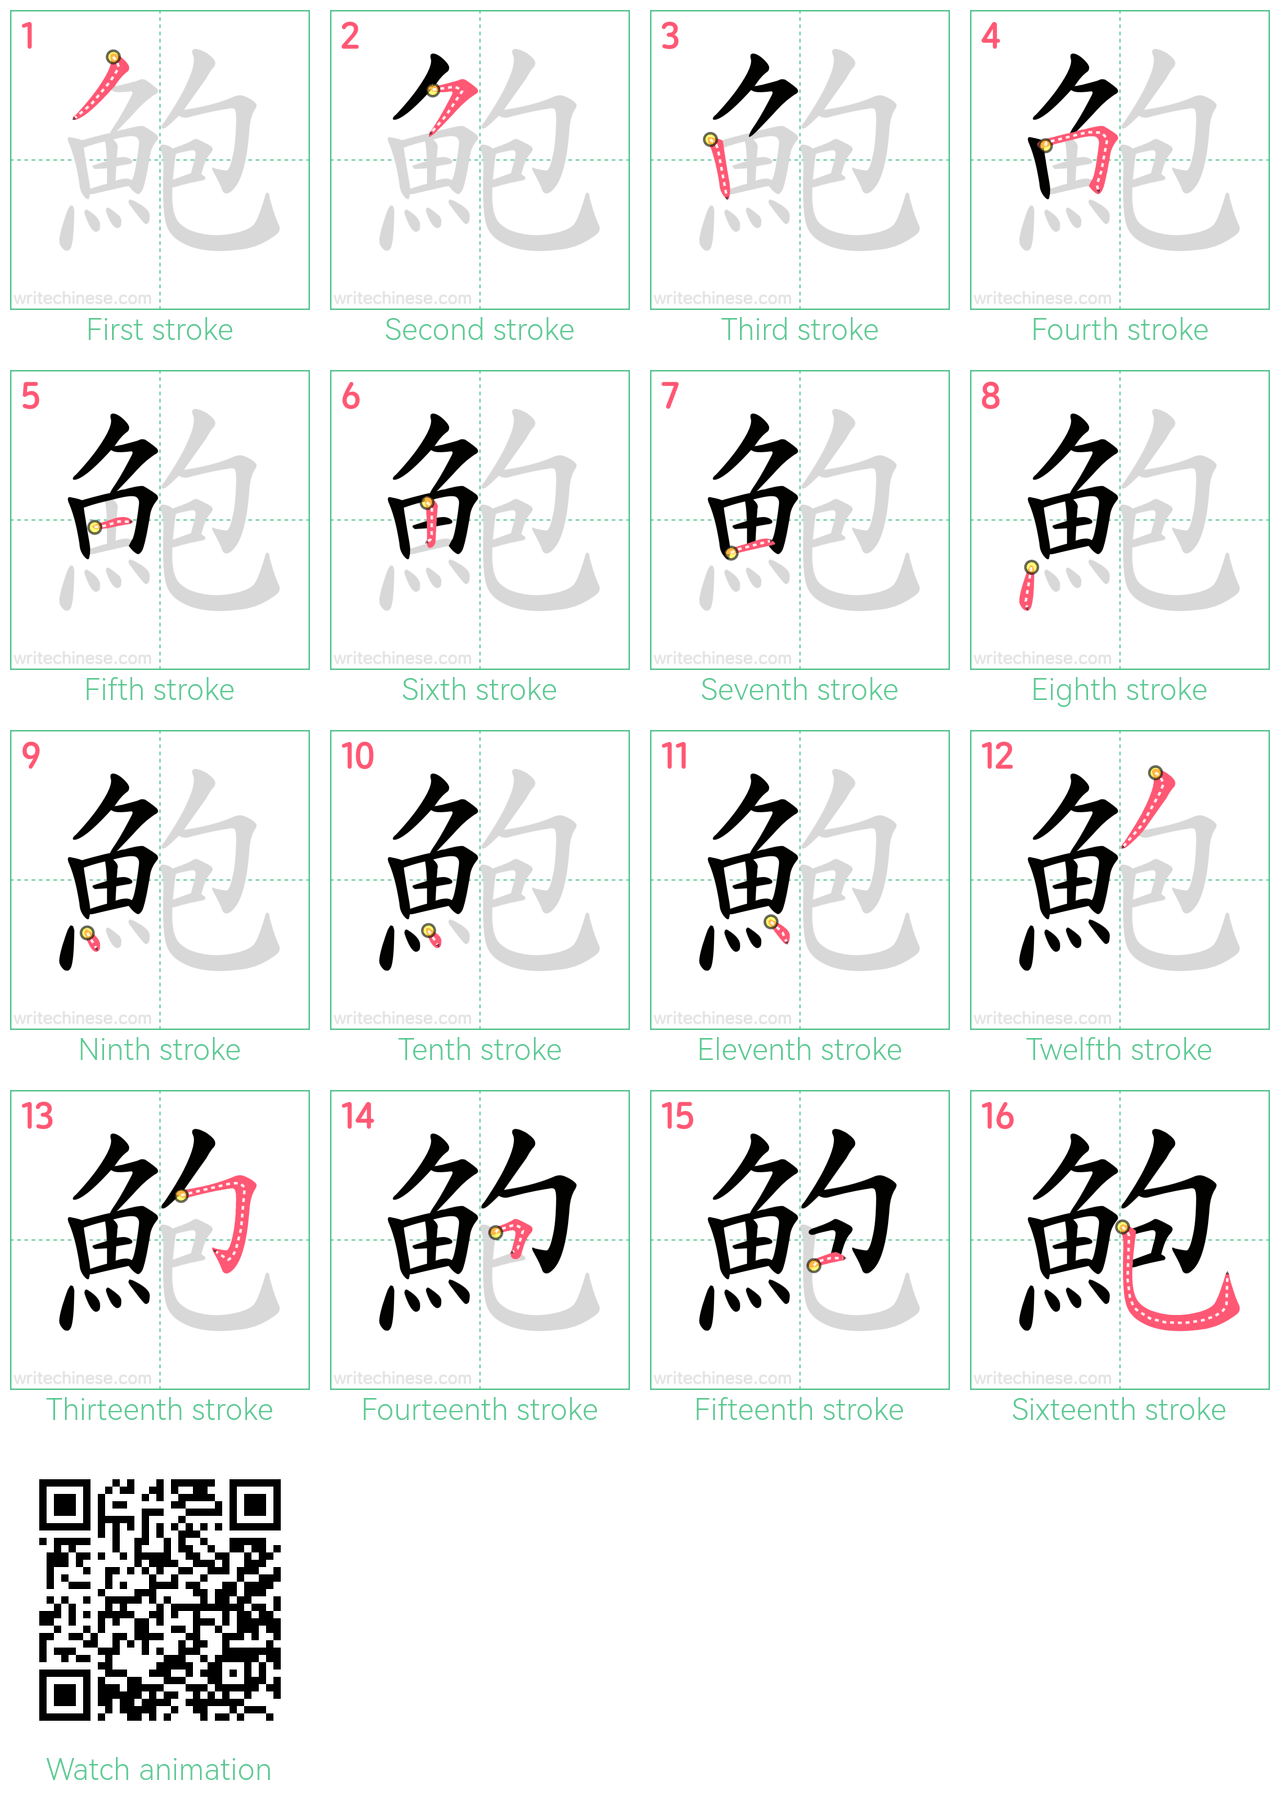 鮑 step-by-step stroke order diagrams